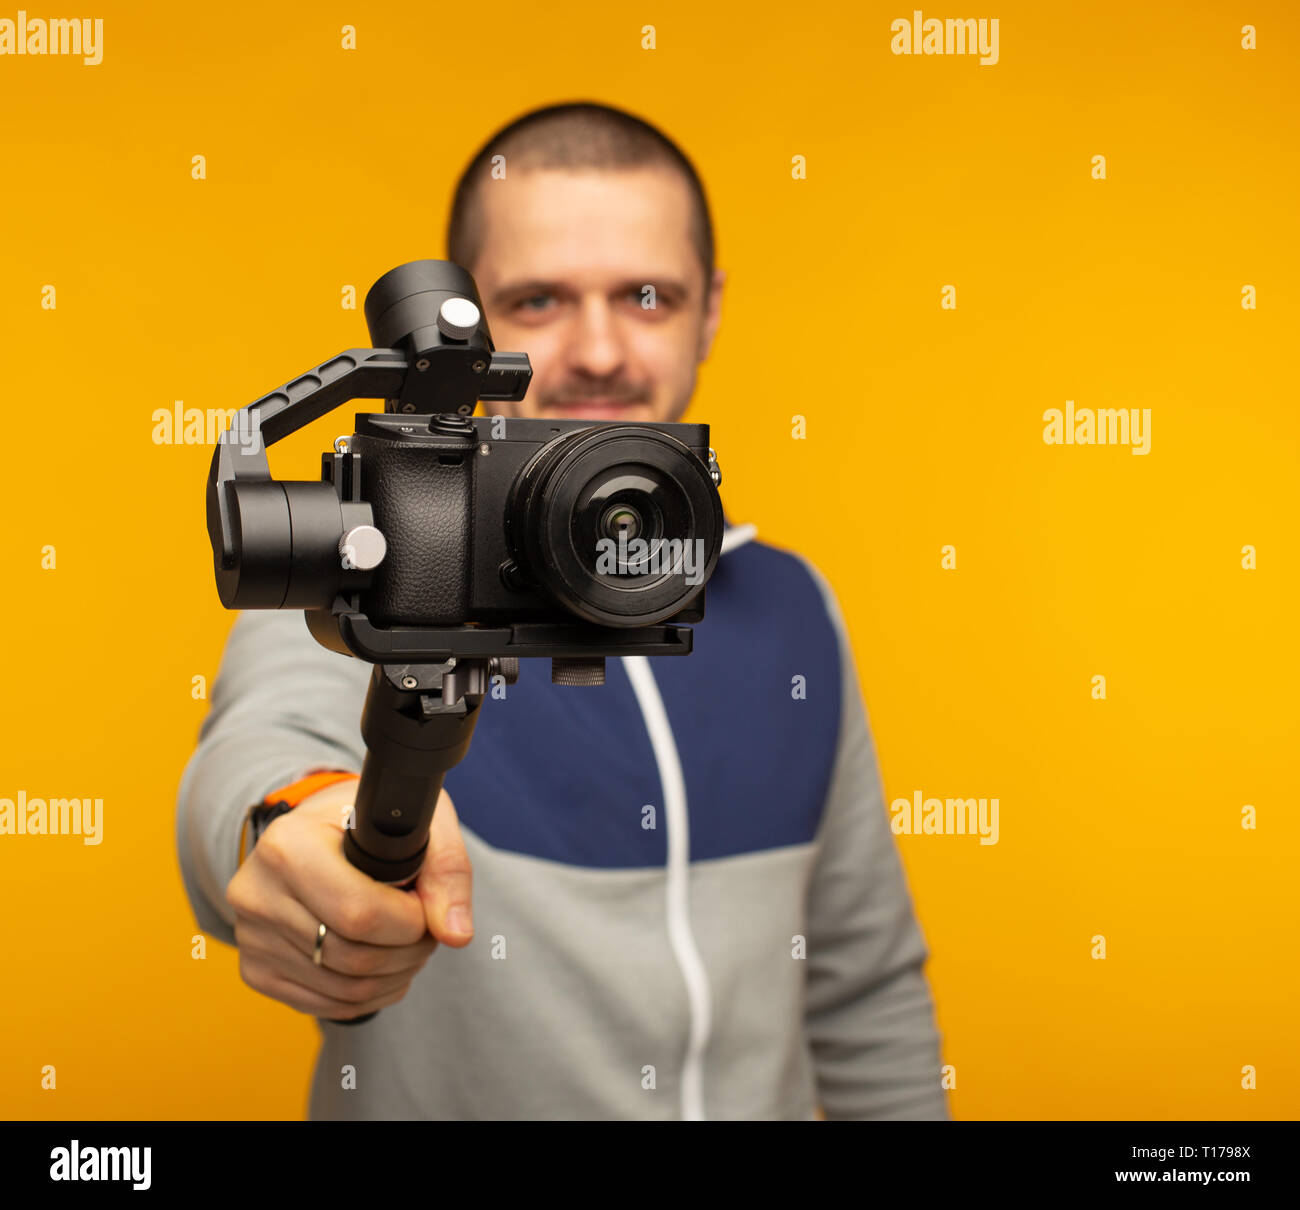 Man with camera tourelle sur quelque chose d'enregistrement Banque D'Images